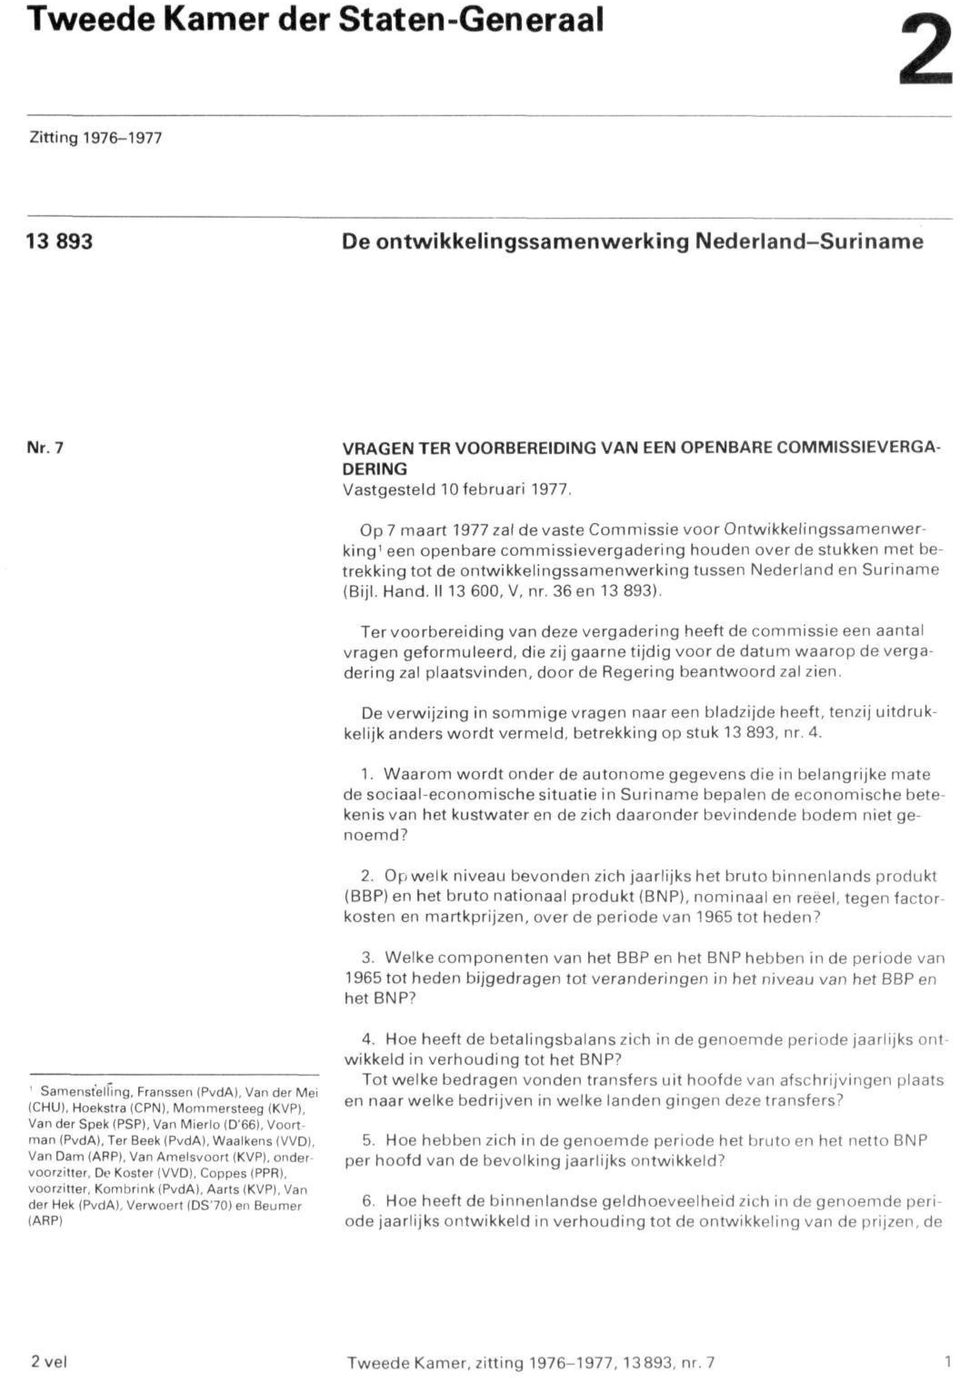 Op 7 maart 1977 zal de vaste Commissie voor Ontwikkelingssamenwerking' een openbare commissievergadering houden over de stukken met betrekking tot de ontwikkelingssamenwerking tussen Nederland en